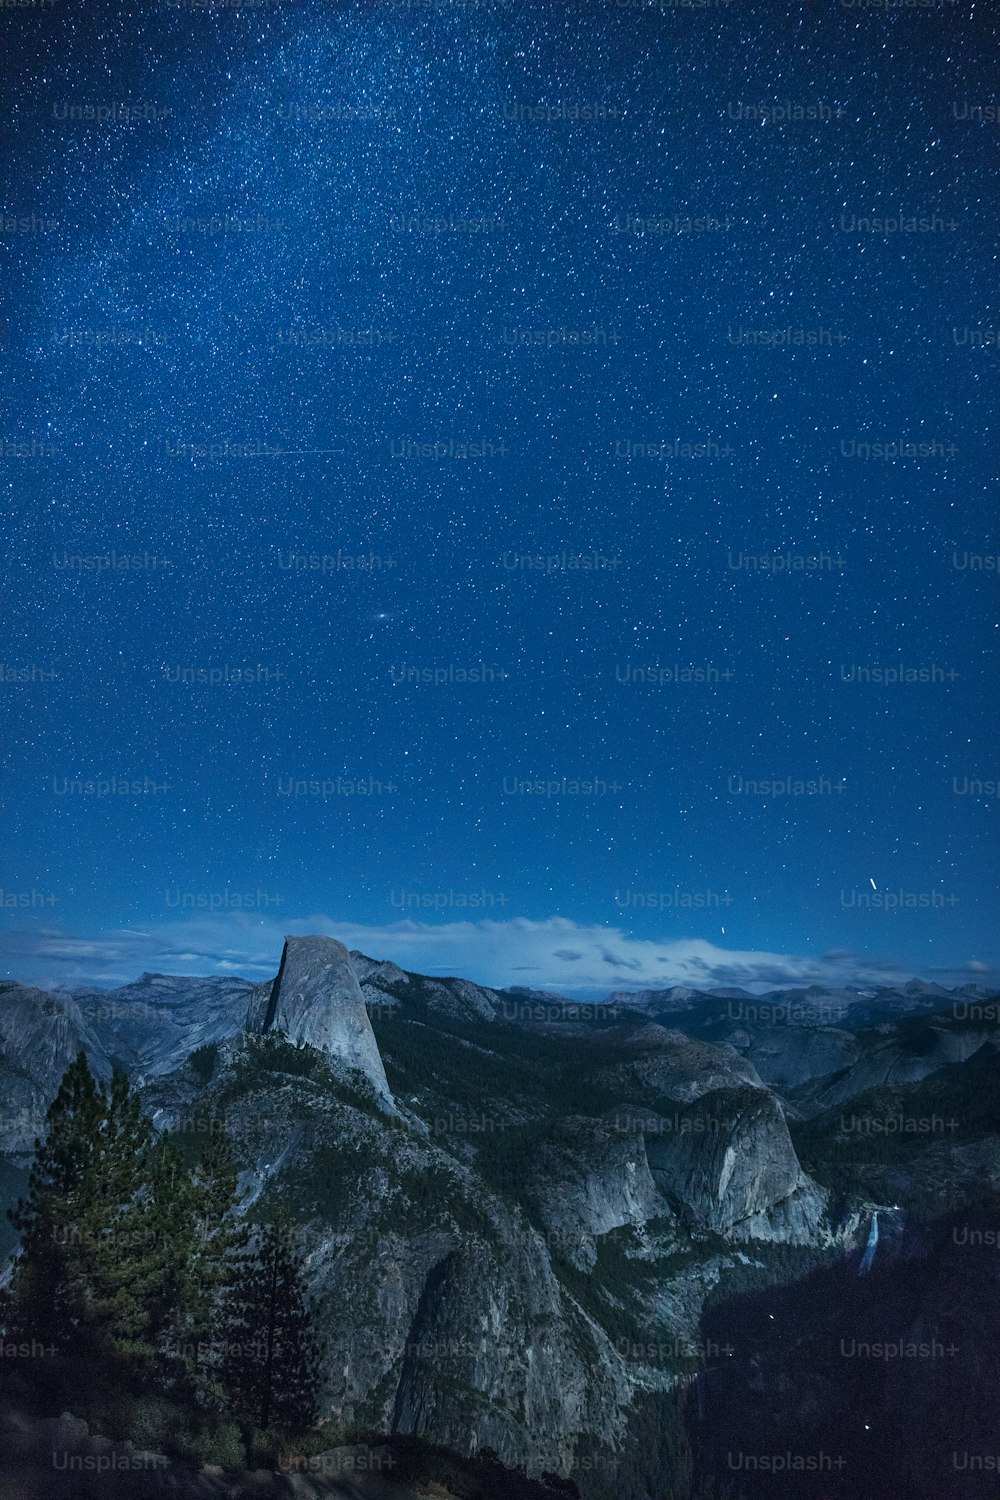 Le ciel nocturne au-dessus d’une chaîne de montagnes avec des étoiles dans le ciel